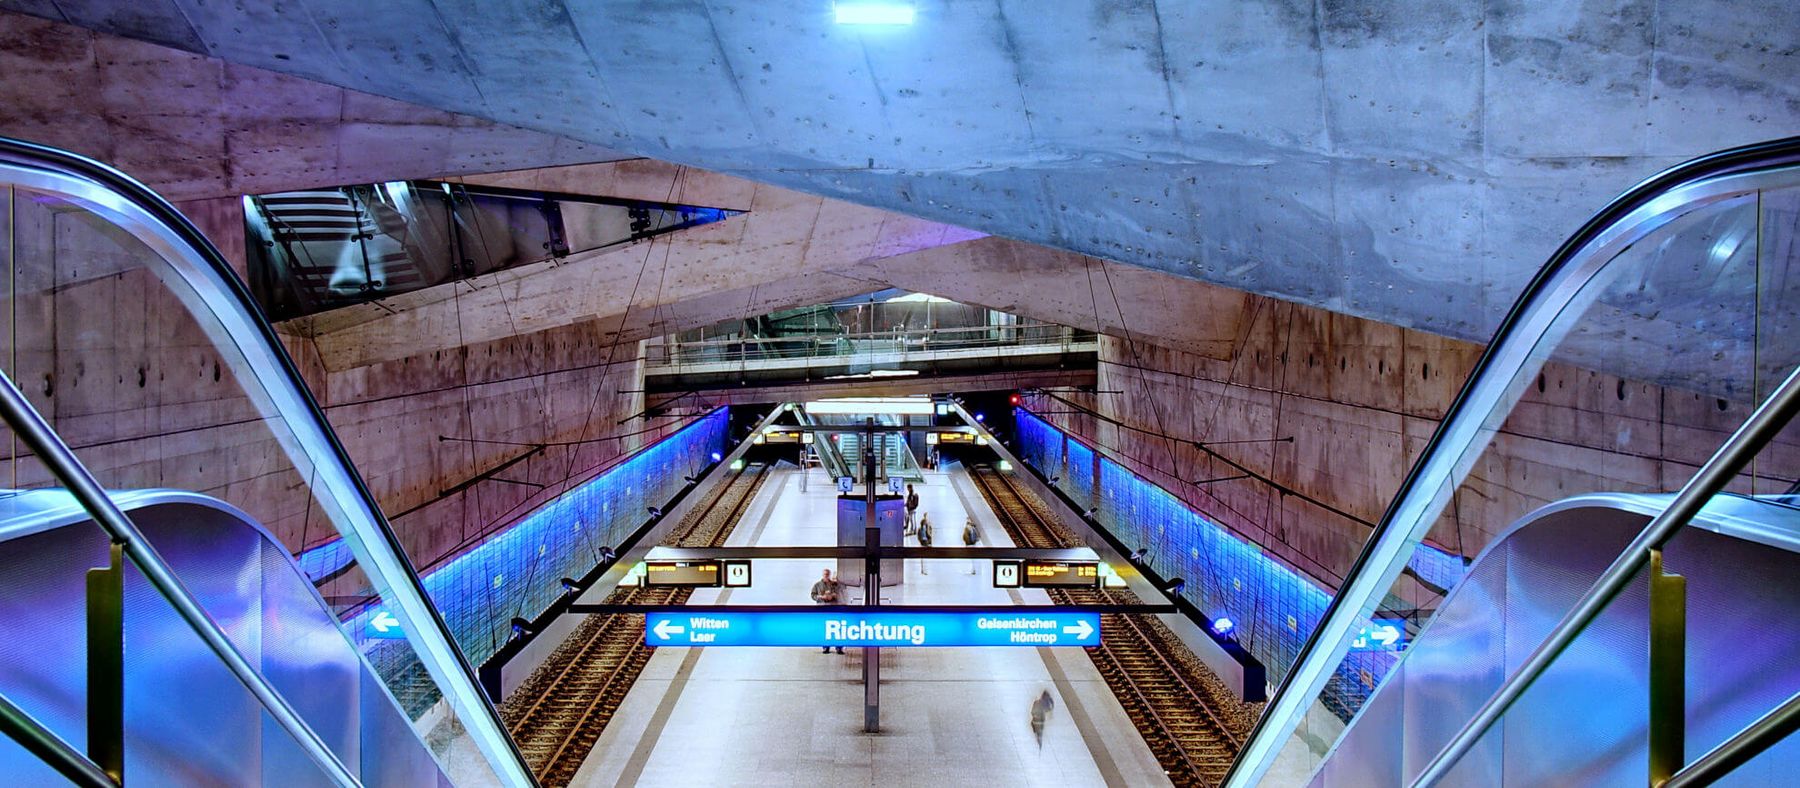 Underground station "Rathaus Bochum"